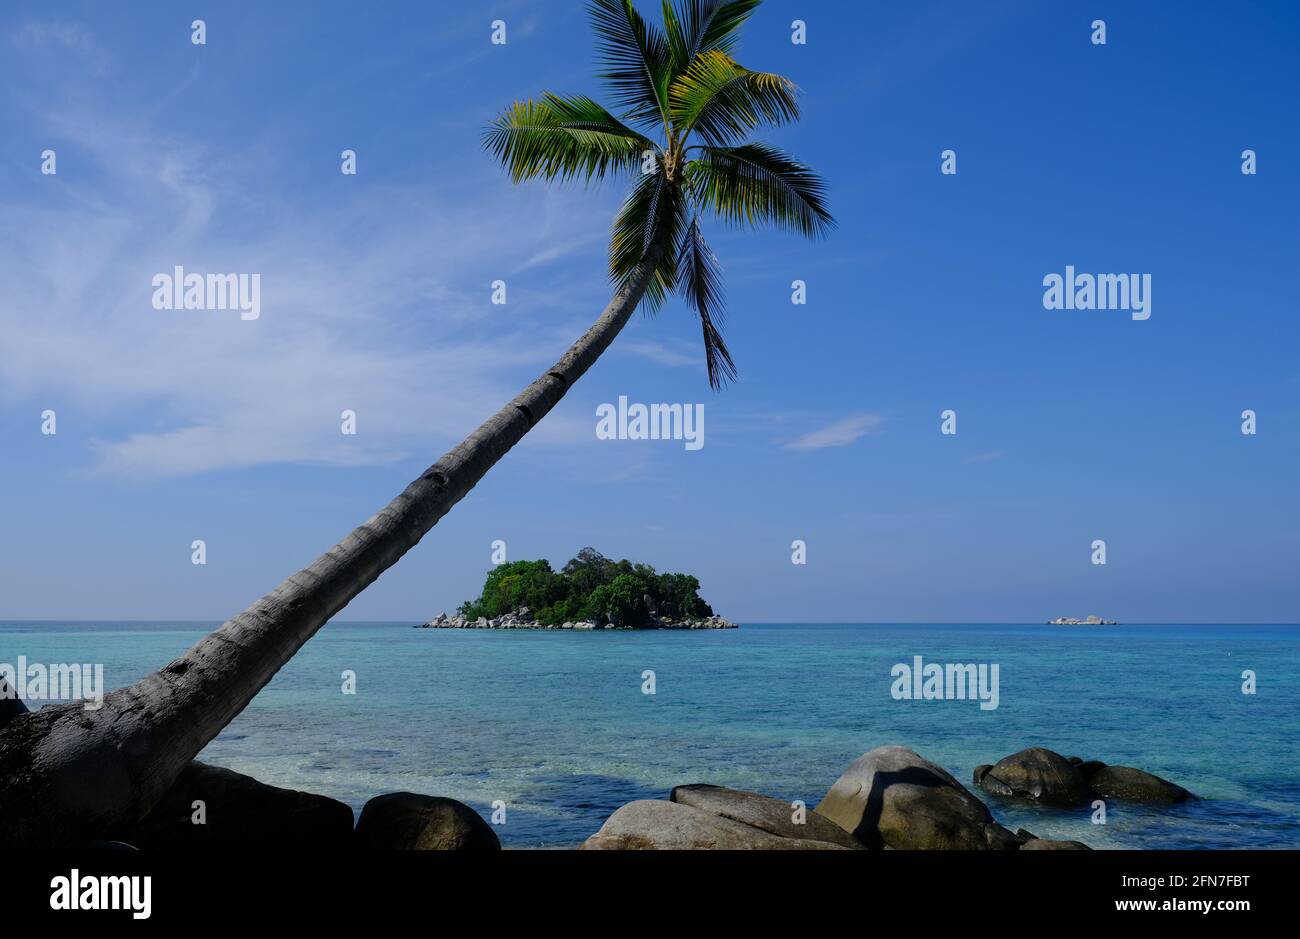 Iles Anambas Indonésie - Plage de l'île de Telaga avec un seul palmier arbre Banque D'Images